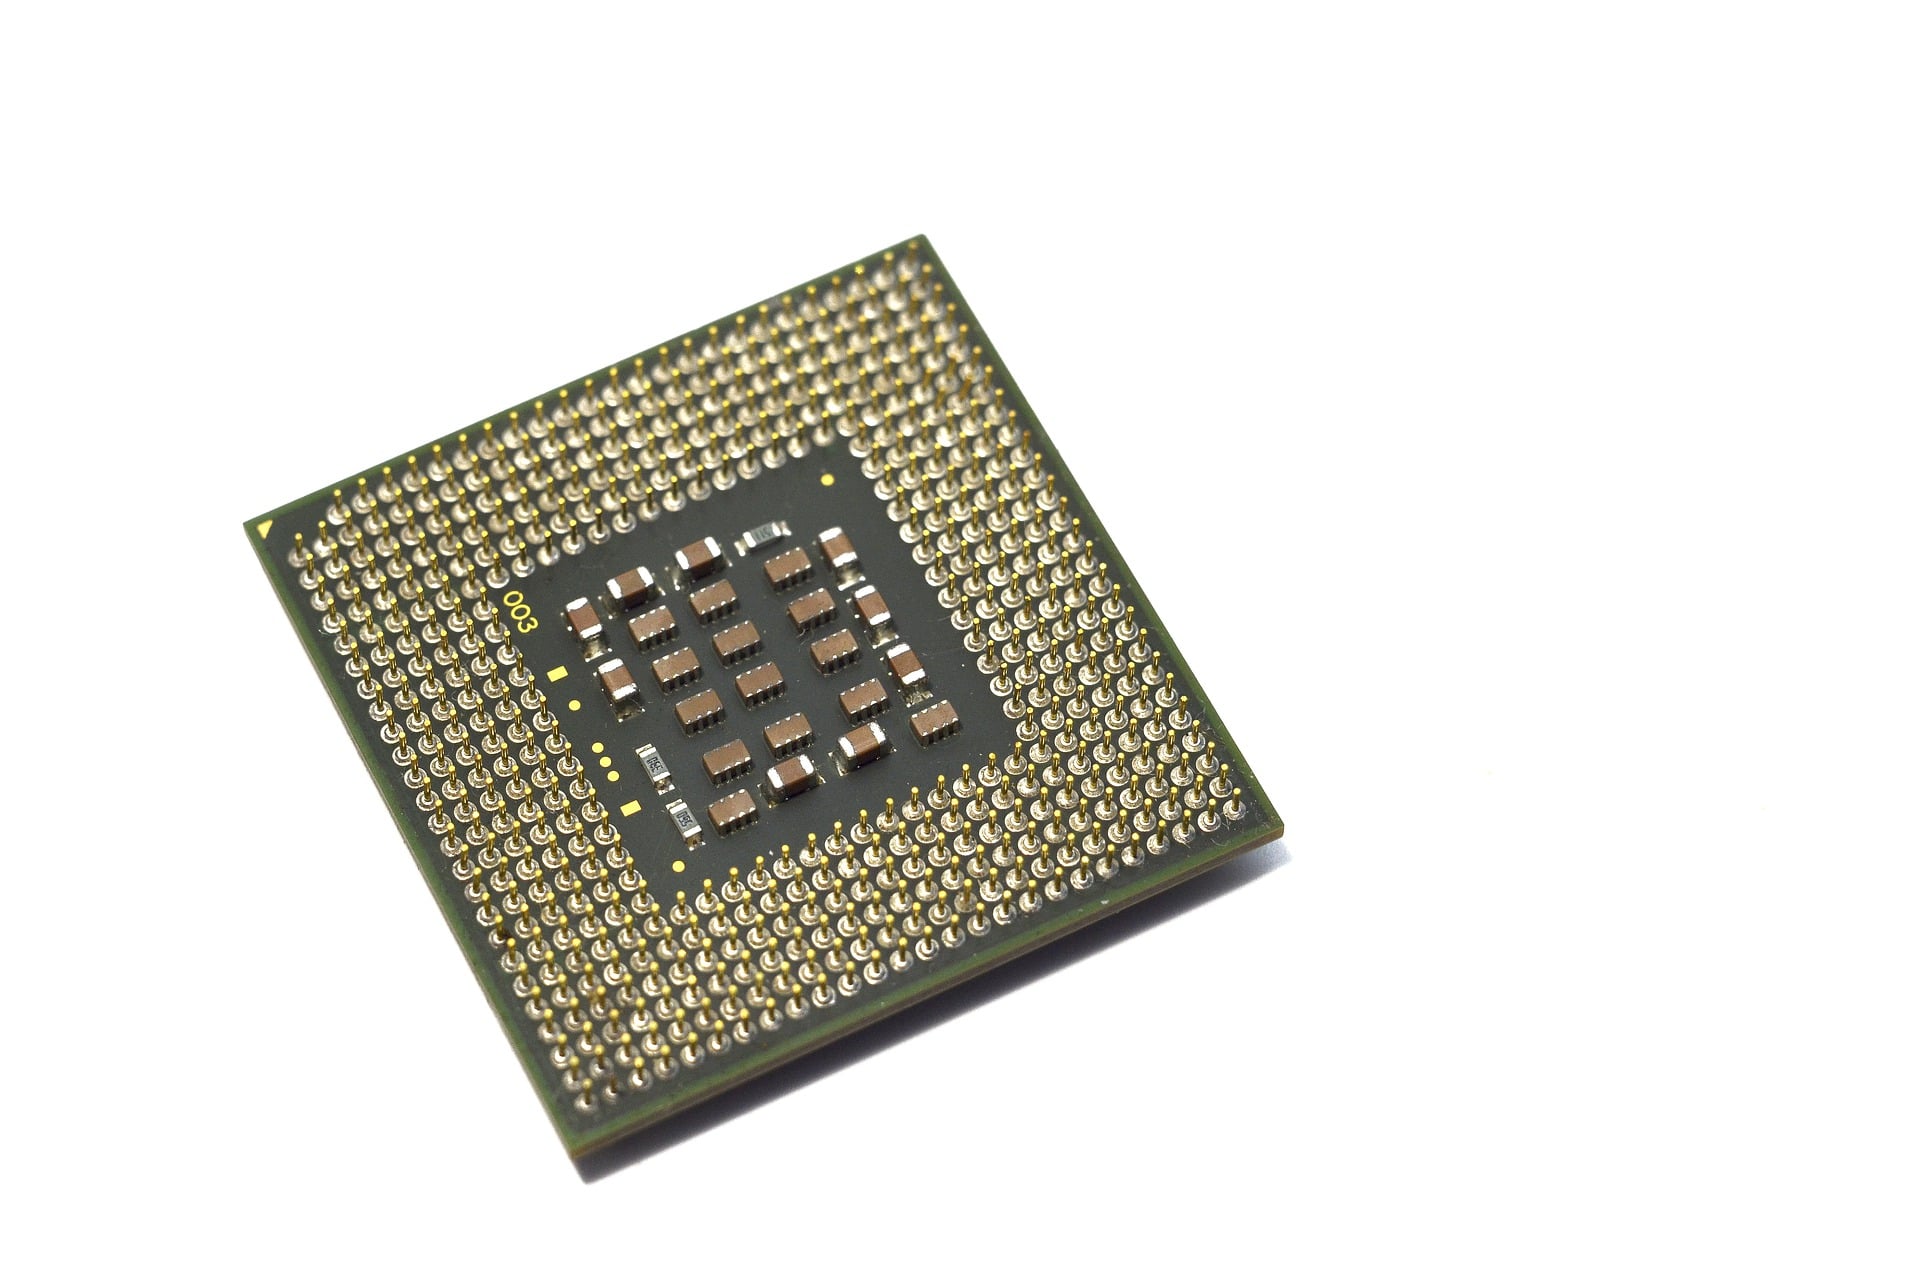 Il microprocessore